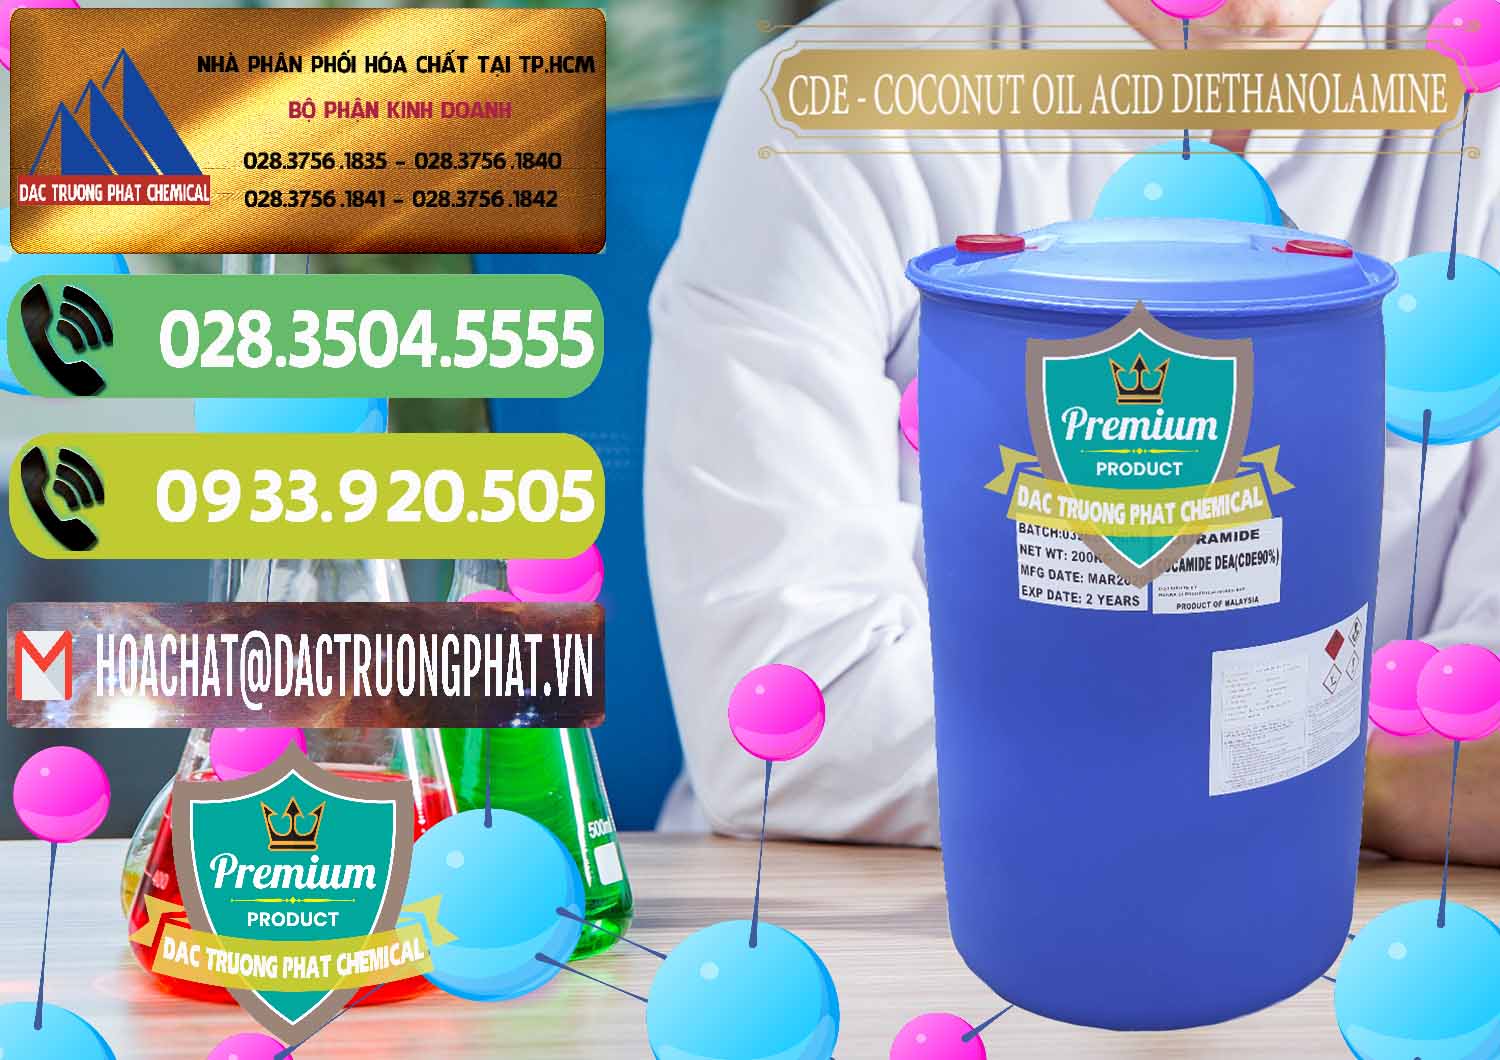 Nhà phân phối & bán CDE - Coconut Oil Acid Diethanolamine Mã Lai Malaysia - 0311 - Chuyên cung cấp - bán hóa chất tại TP.HCM - hoachatmientay.vn